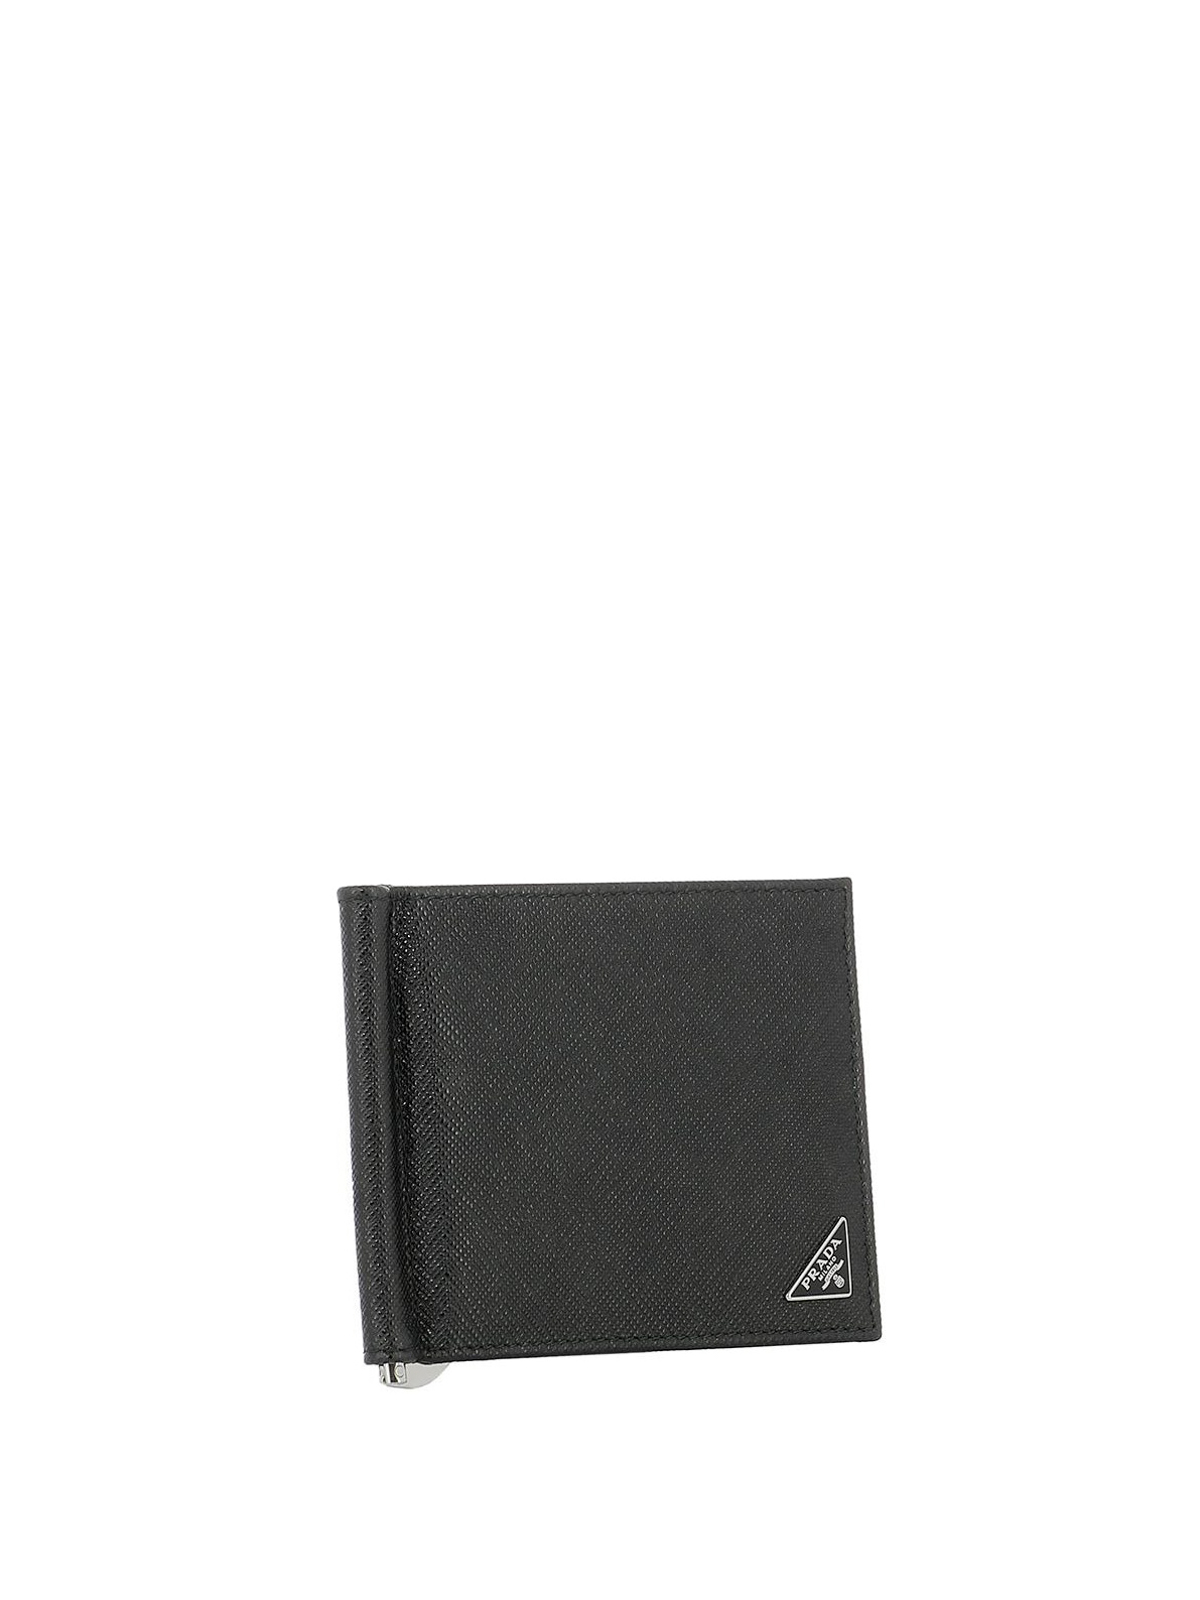 Prada - Black saffiano wallet with 